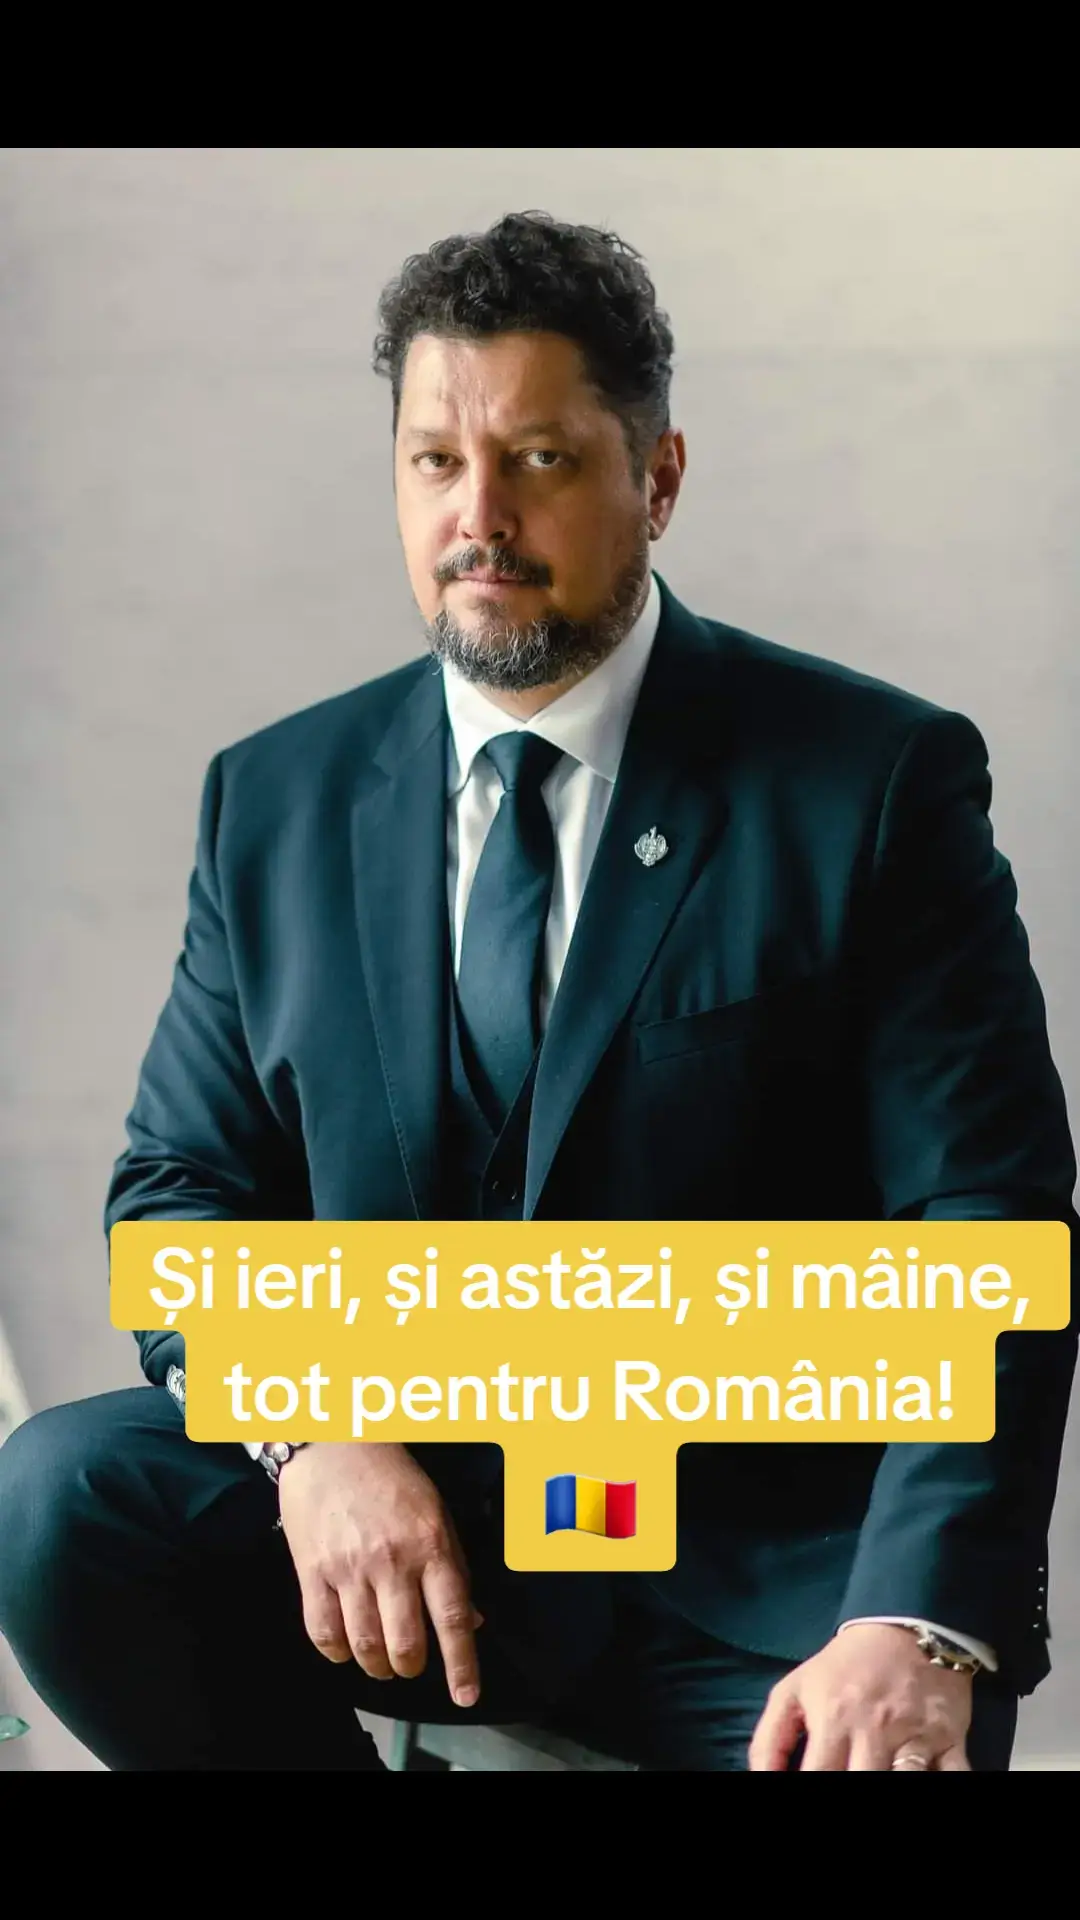 Frica și speranța România se înatorează tot mai mult. A ajuns la 52% din PIB, nivel foarte primejdios. În acest ritm, vom ajunge dependenți pe viață de alții.  România se amestecă în războiul din Ucraina, deși NATO nu este parte beligerantă. Ne pregătim deci pentru extinderea războiului și nu trebuie să vă mai explic ce înseamnă asta. România este prima care se conformează tuturor măsurilor venite de la Bruxelles contra interesului național: Green Deal, PNRR, Pactul privind migrația… Rezultatele se măsoară în cifre dezastruoase pentru economie și în grade pe scara cutremurului social.  România e ținută în regim de subdezvoltare, ca teritoriu de extracție a bogățiilor naturale și a resurselor umane de calitate. România este în avangarda statelor europene care renunță până și la a mima democrația pentru a stârpi orice opoziție politică. Libertatea devine tot mai mult o iluzie. România este un stat capturat de o mafie transpartinică și transnațională. Interfața ei este alcătuită din politicienii partidului comasat.  Pentru românii lucizi și bine informați, toate acestea sunt limpezi și le dau fiori pe șira spinării. Frica de ce urmează este tot mai pronunțată în societatea românească.  Propaganda partidului comasat liberalo-socialist vrea să anuleze această frică, agitînd sperietori false. În loc să răspundă pentru că sleiesc țara de resurse și au închinat-o intereselor străine, politicienii partidului comasat ne spun că, dacă vor fi înlocuiți de la putere, va fi mai rău.  Or singura speranță pe care o mai pot avea românii este legată de schimbarea celor care guvernează această țară, separat sau împreună, de 34 de ani.  Asta este și frica lor, a celor din PSD și PNL, că poporul va mătura cu ei pe jos în alegerile care urmează.  De aceea, liberalii și pesediștii lovesc în speranța românilor. Ei încearcă să-i convingă pe români nu de bunele lor intenții, ci că opoziția este la fel de rea. Și pentru asta au la dispoziție toate mijloacele.  Drept pentru care lupta dintre partidul comasat PSD-PNL și singura opoziție, AUR, devine dramatică, precum cea dintre David și Goliat. Dar cu noi este Dumnezeu! #Credinta #politica #dreptate #adevar 